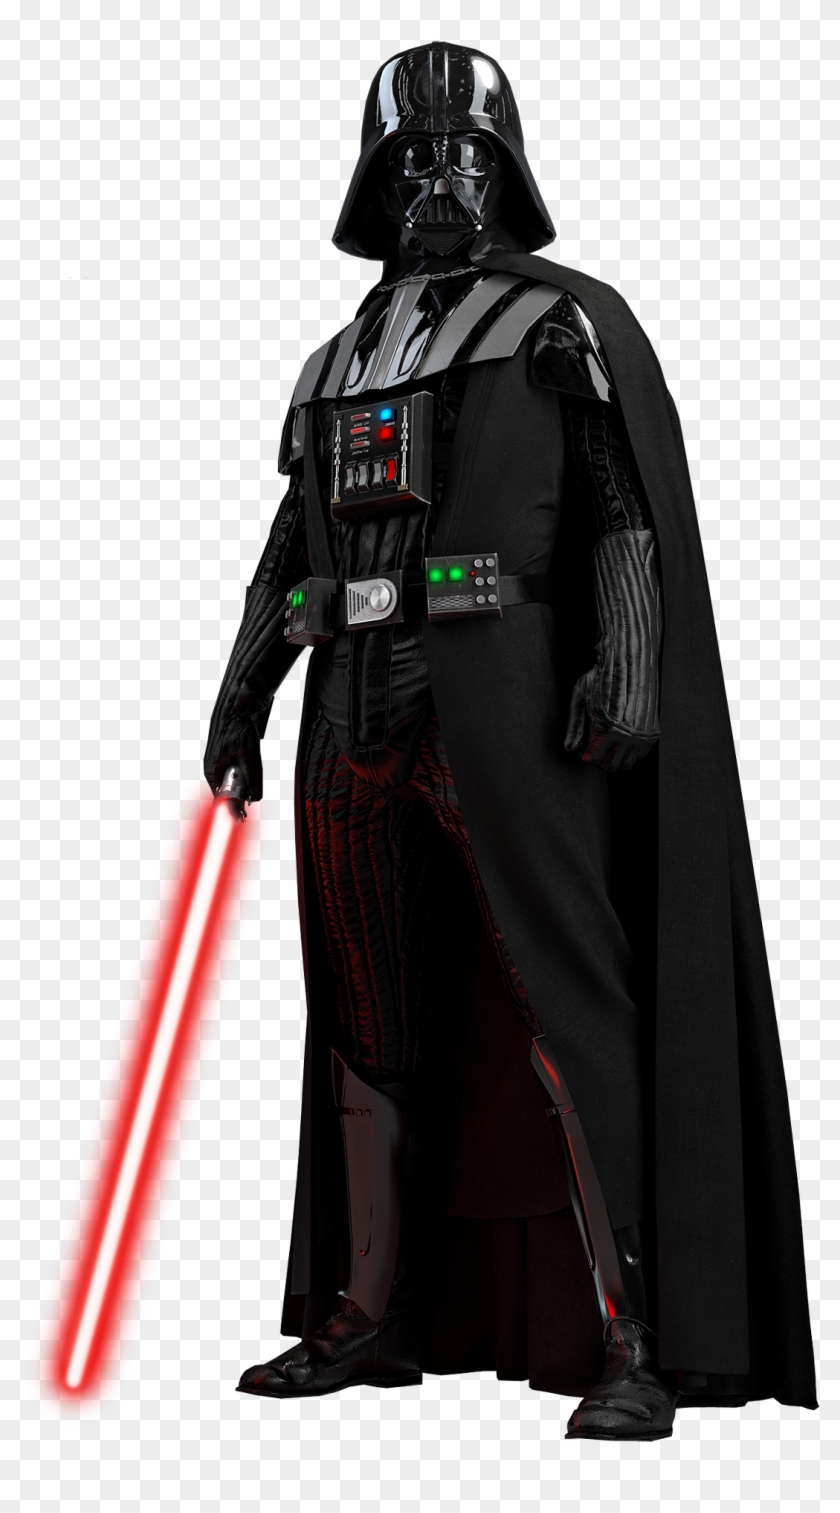 Darth Vader Png - Darth Vader Transparent Background #209336